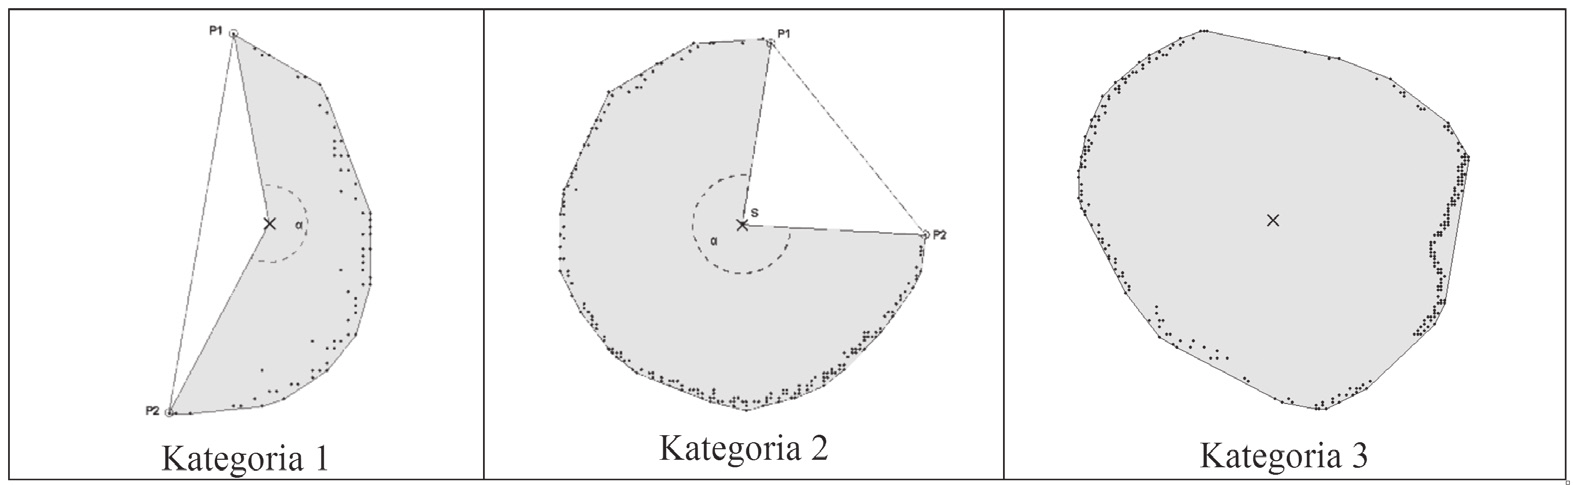 Krakowska Konferencja Młodych Uczonych 2008 Rysunek 5. Chmura punktów z zaznaczonymi wycinkami na różnych wysokościach Figure 5. Point cloud with slices on different heights 1. 7.